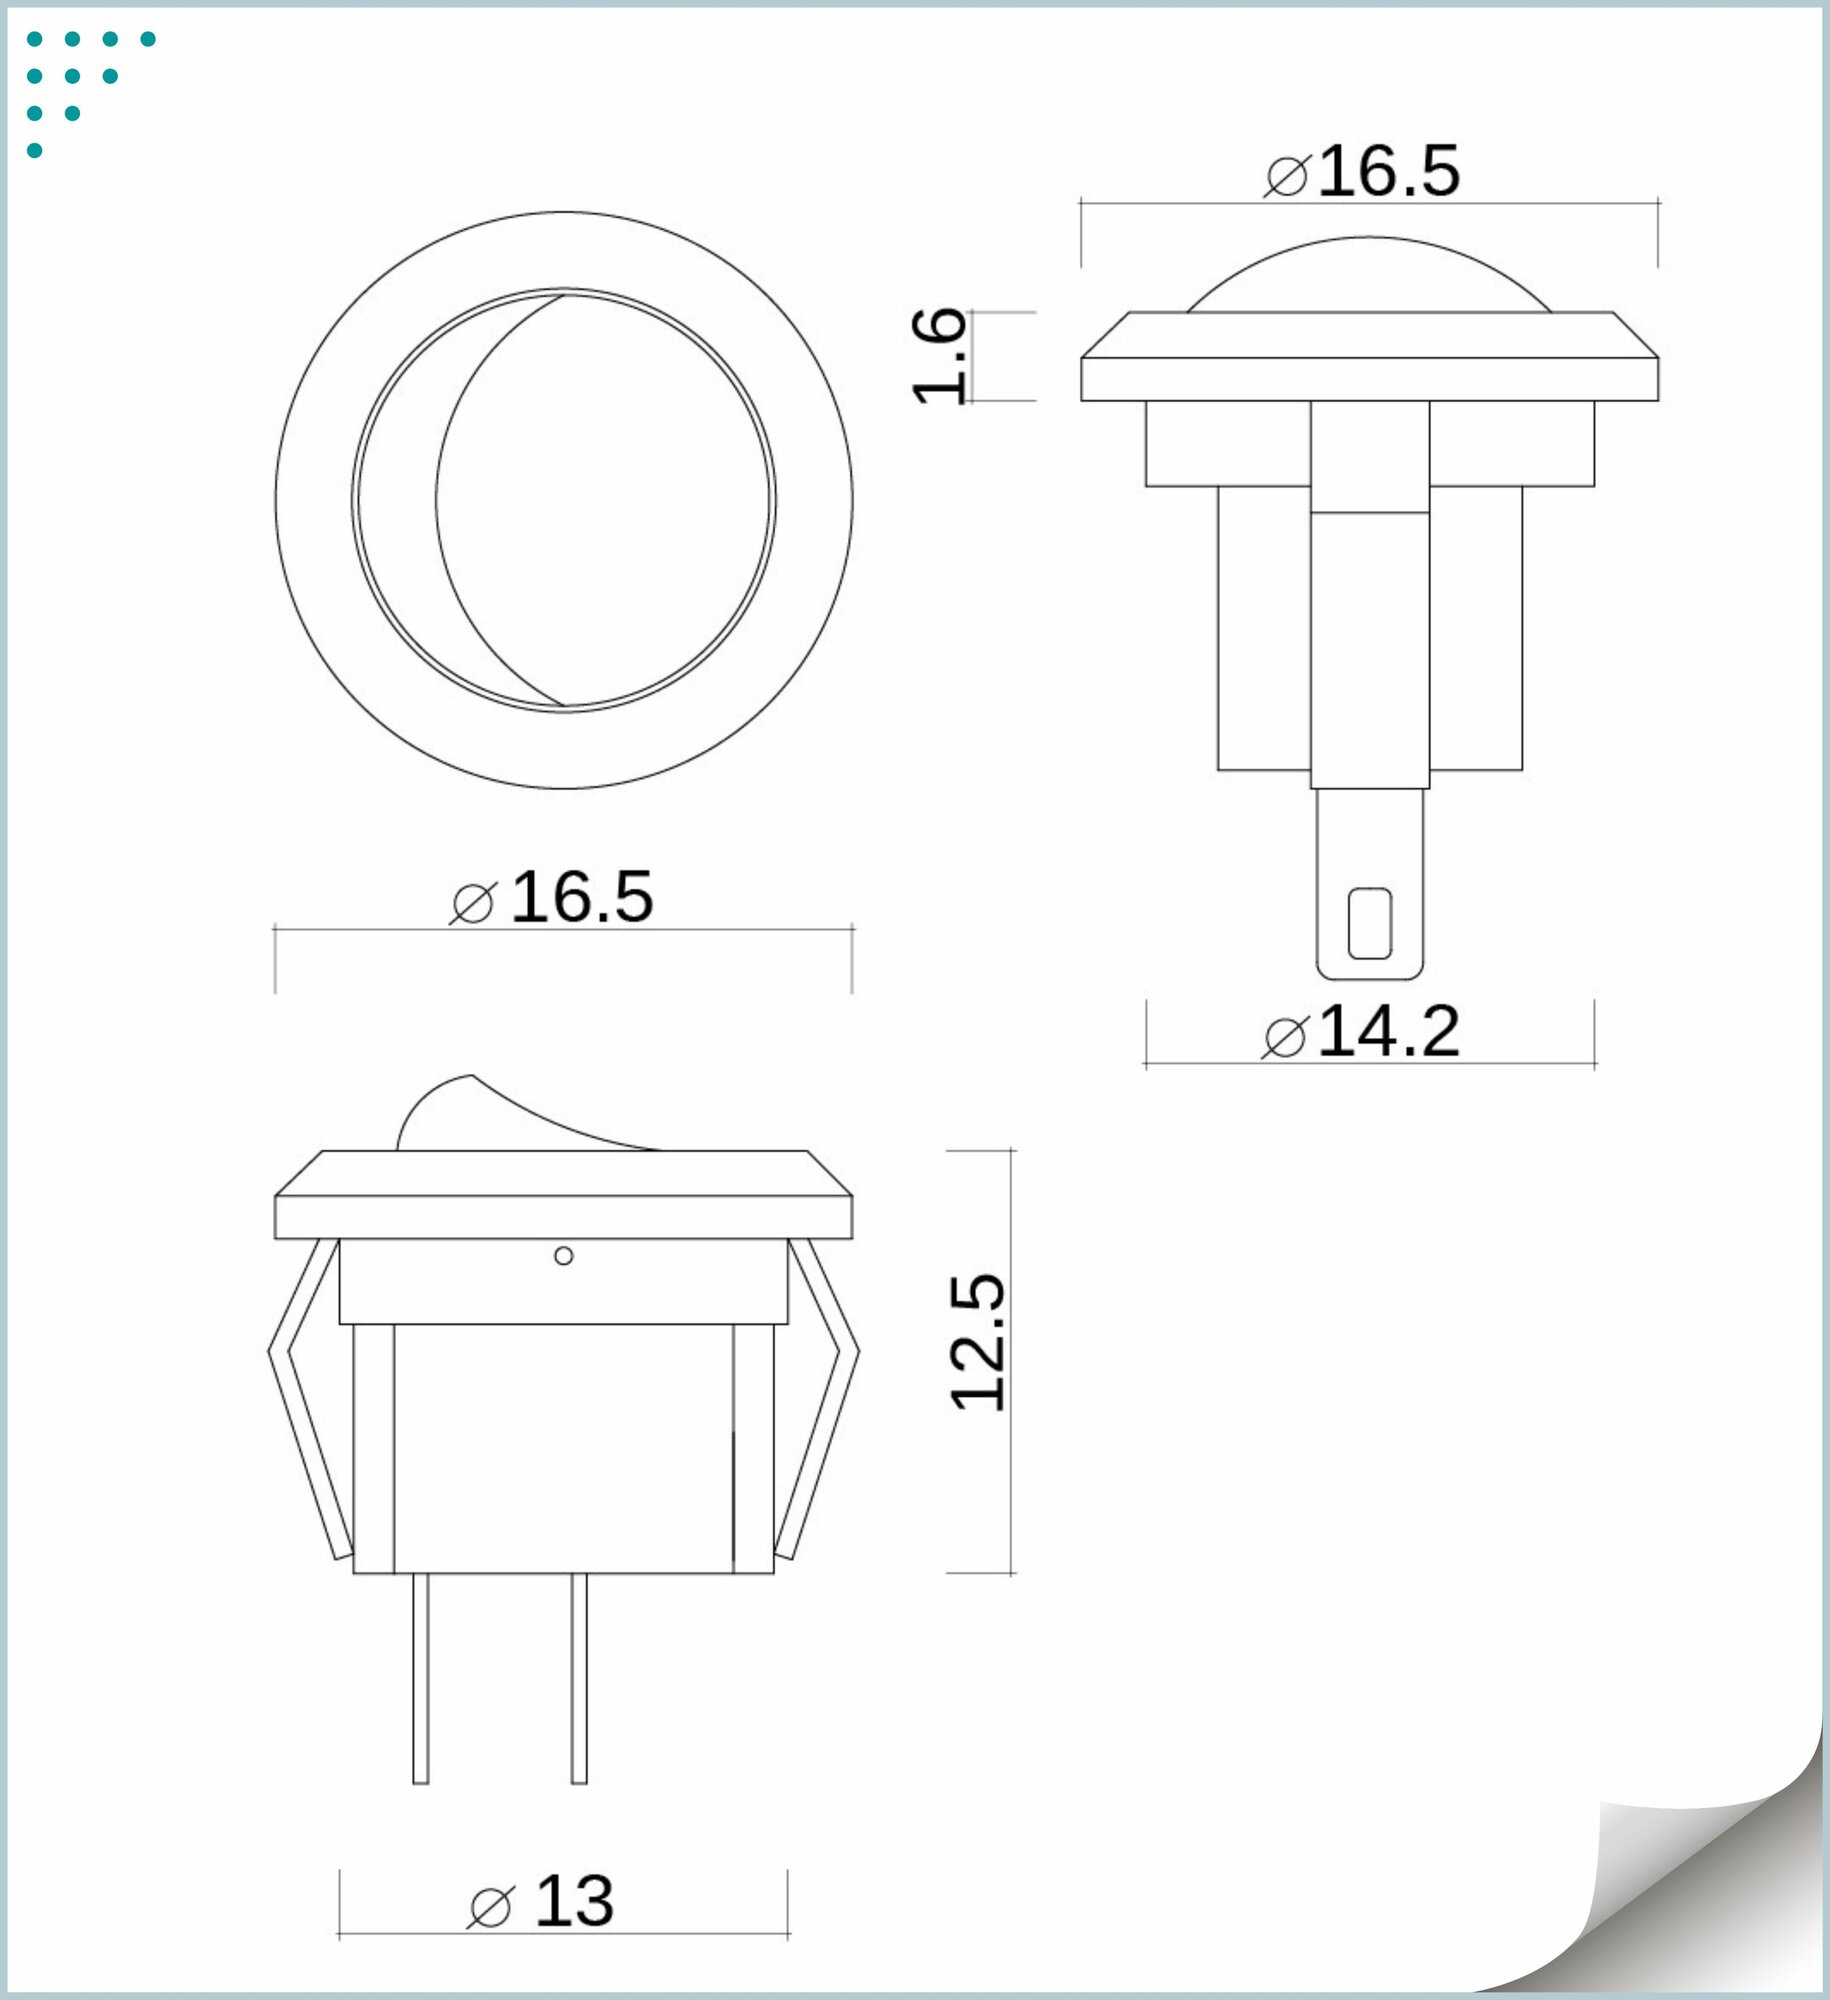 Выключатель одноклавишный, мебельный, круглый врезной минивыключатель D16.5, GLS, 250V, белый